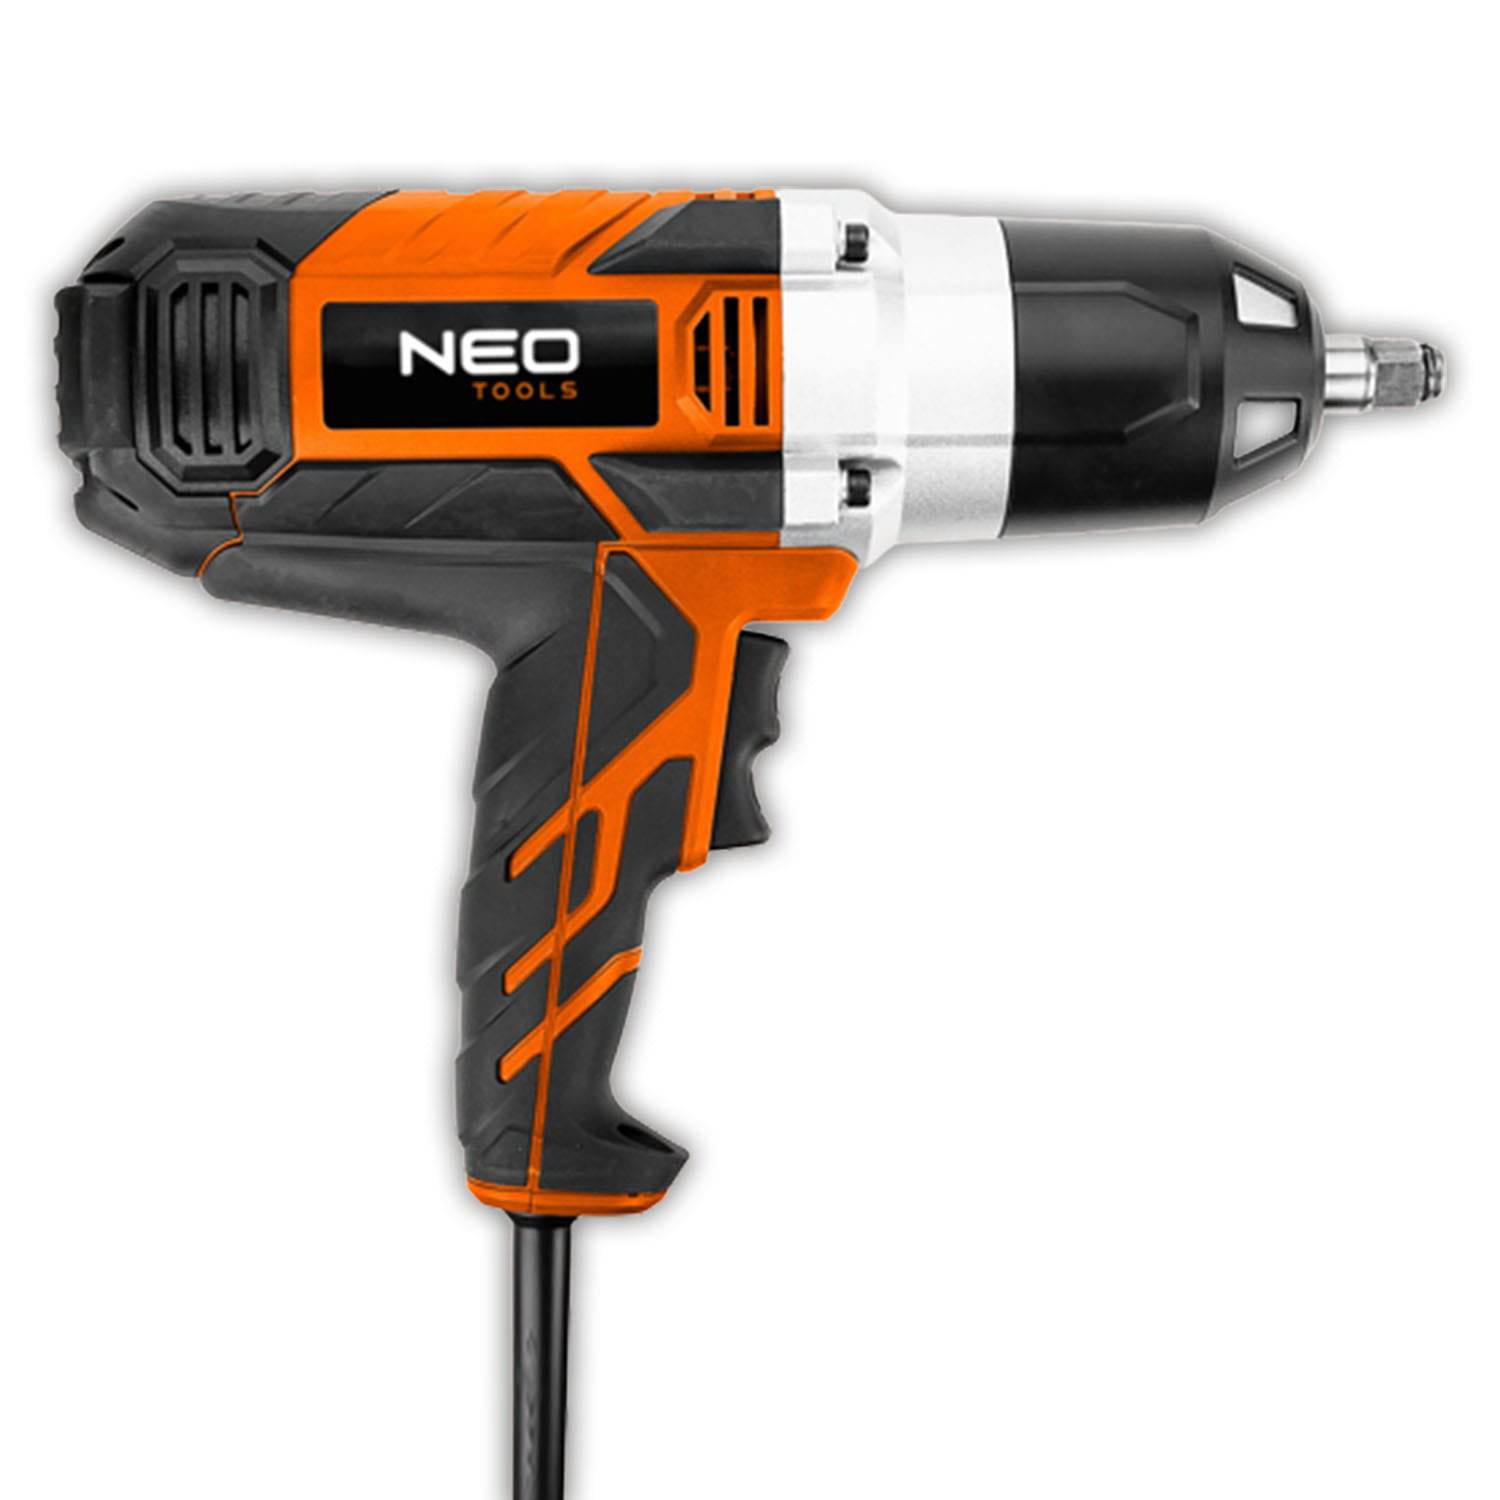 Neo Tools Clé à chocs électrique 1020 W 950 Nm - Le Comptoir du Soudeur